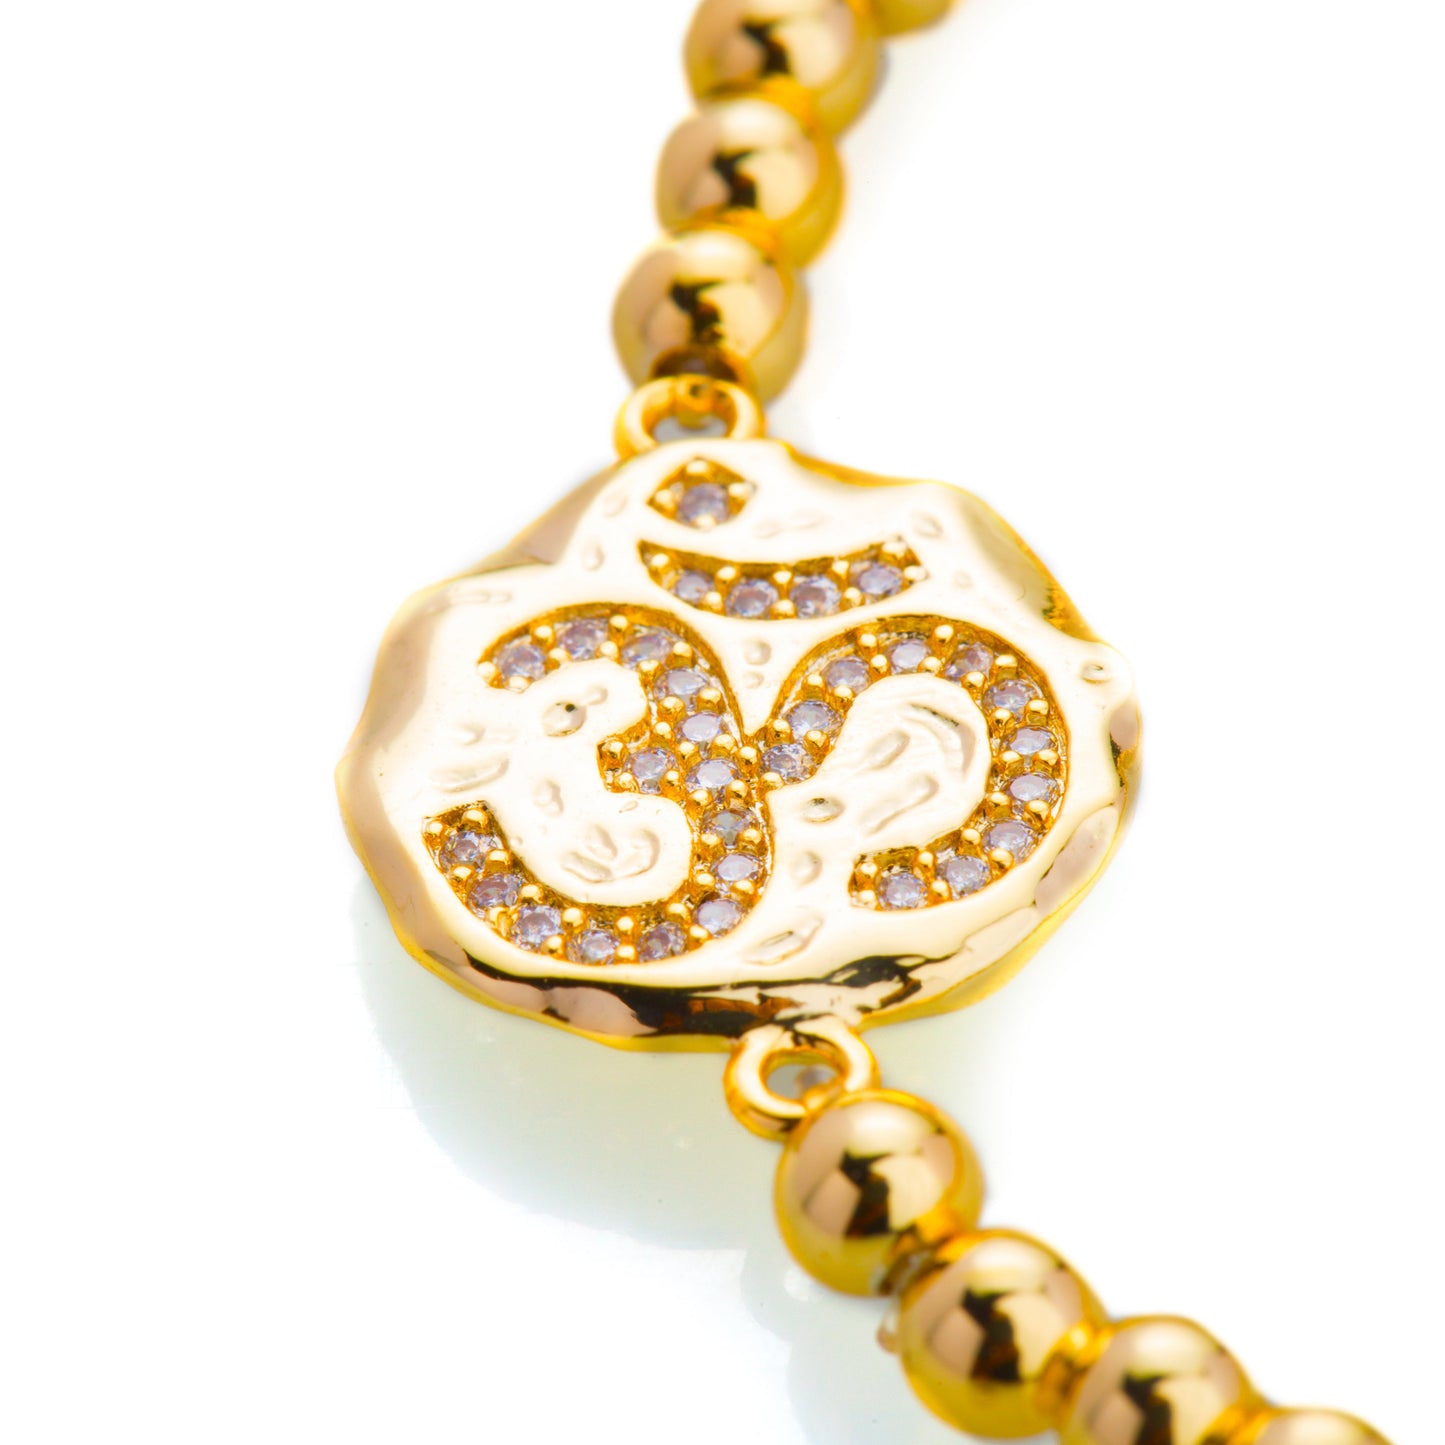 22K Gold Plated American Diamond Om Charm Bracelet For Girls, Teens & Women (MD_3010)